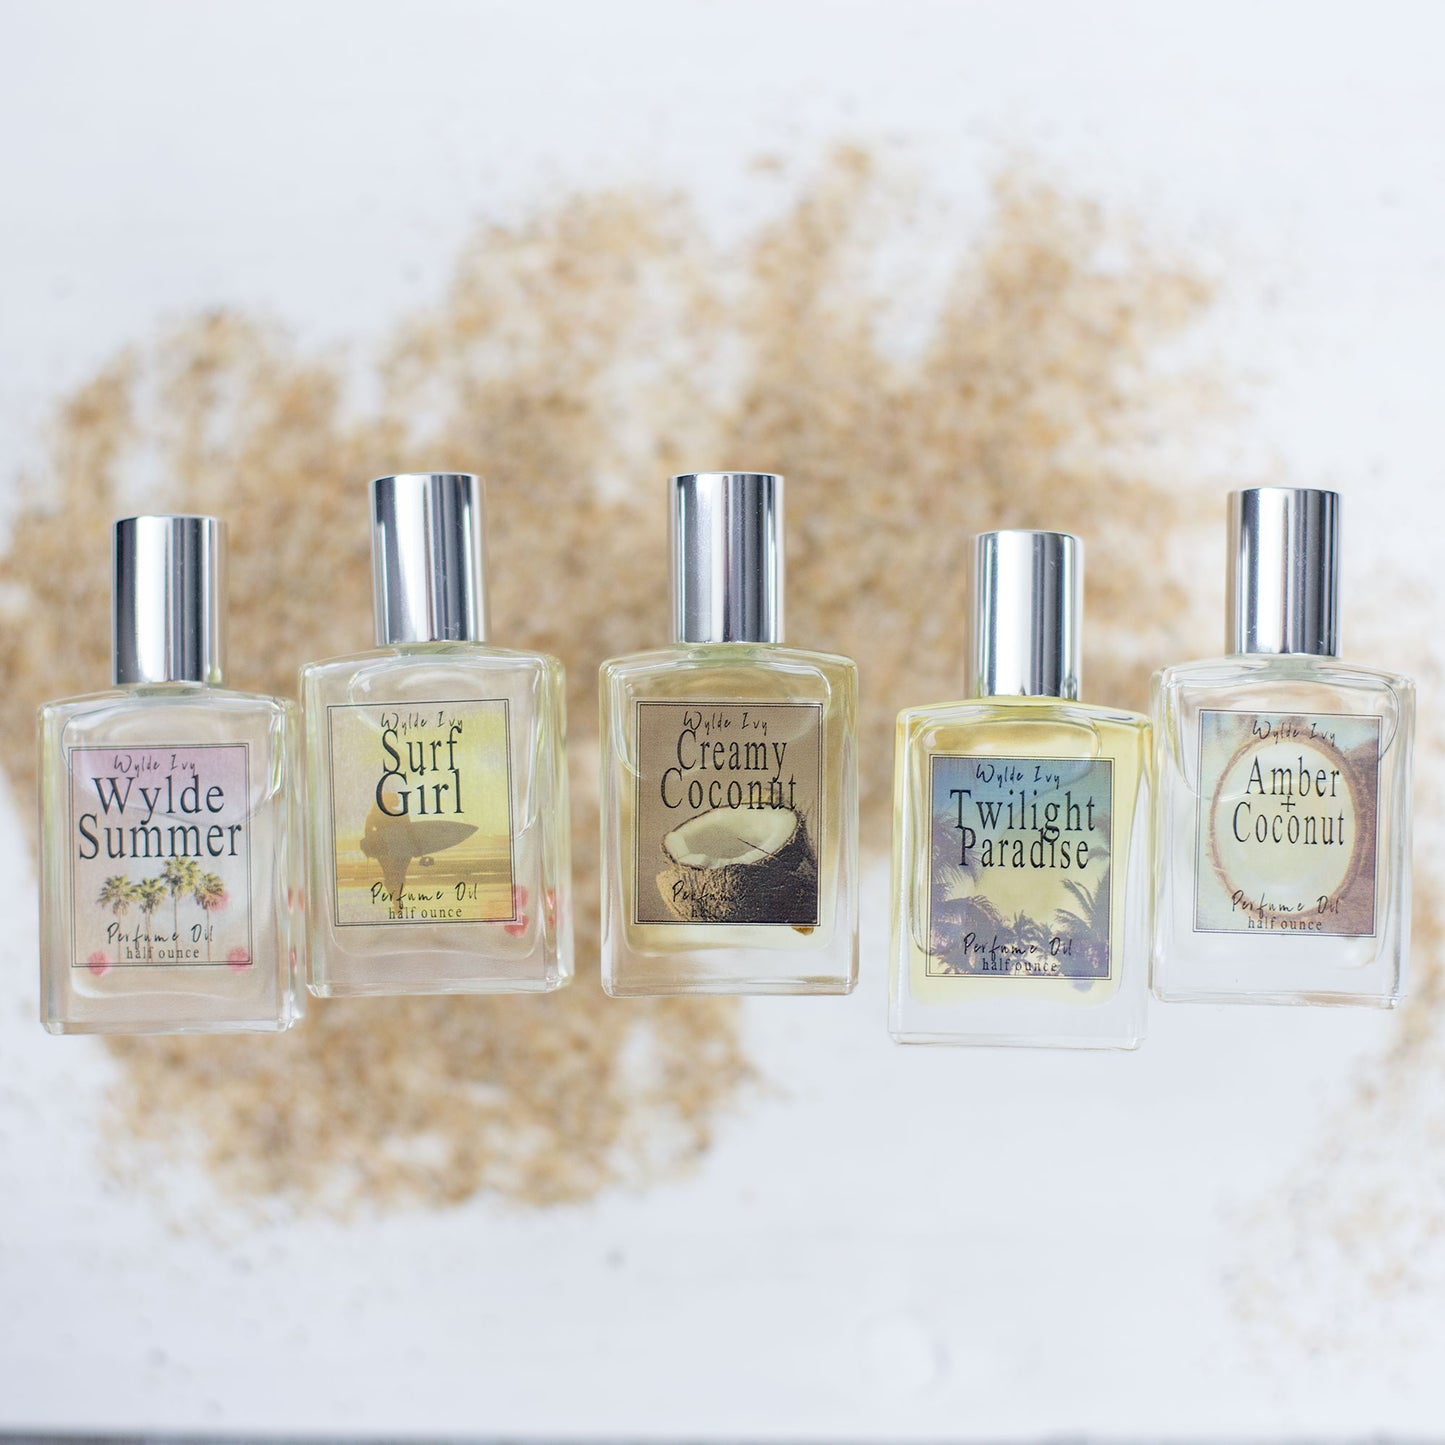 Beach Babe Perfume Oils